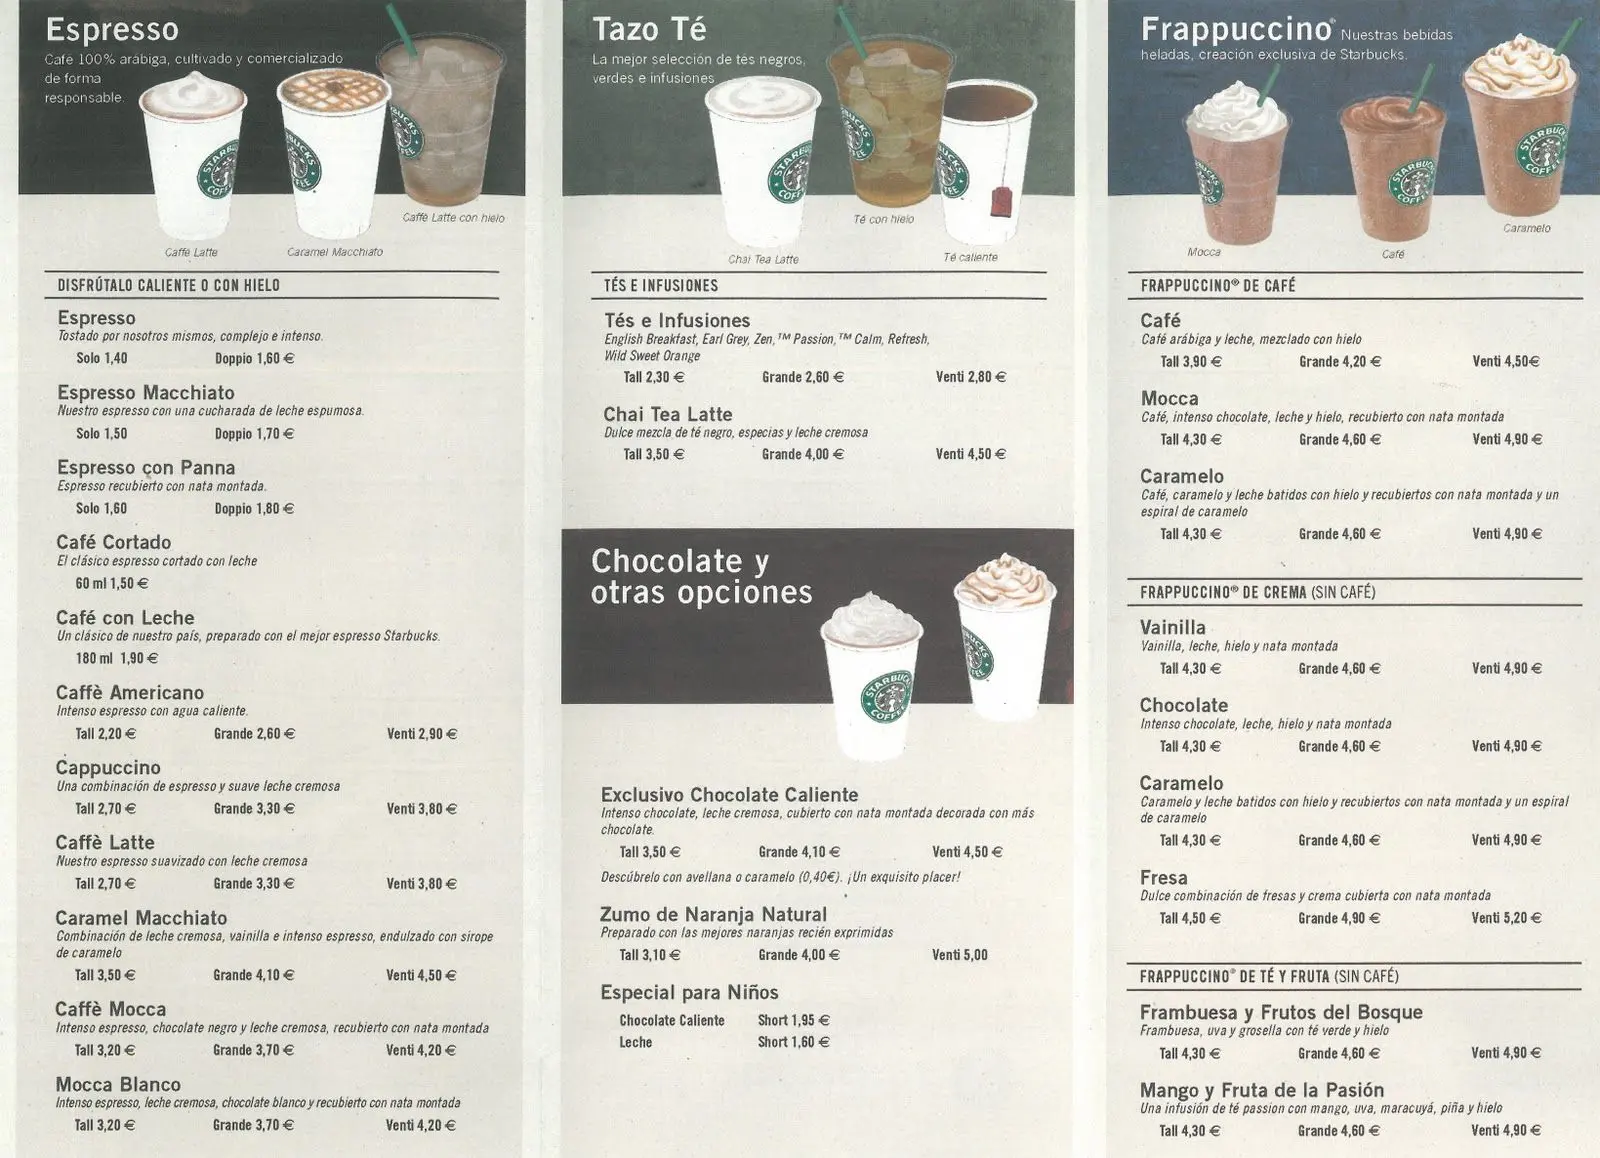 precio cafe starbucks españa - Cuánto cuesta un latte en Starbucks